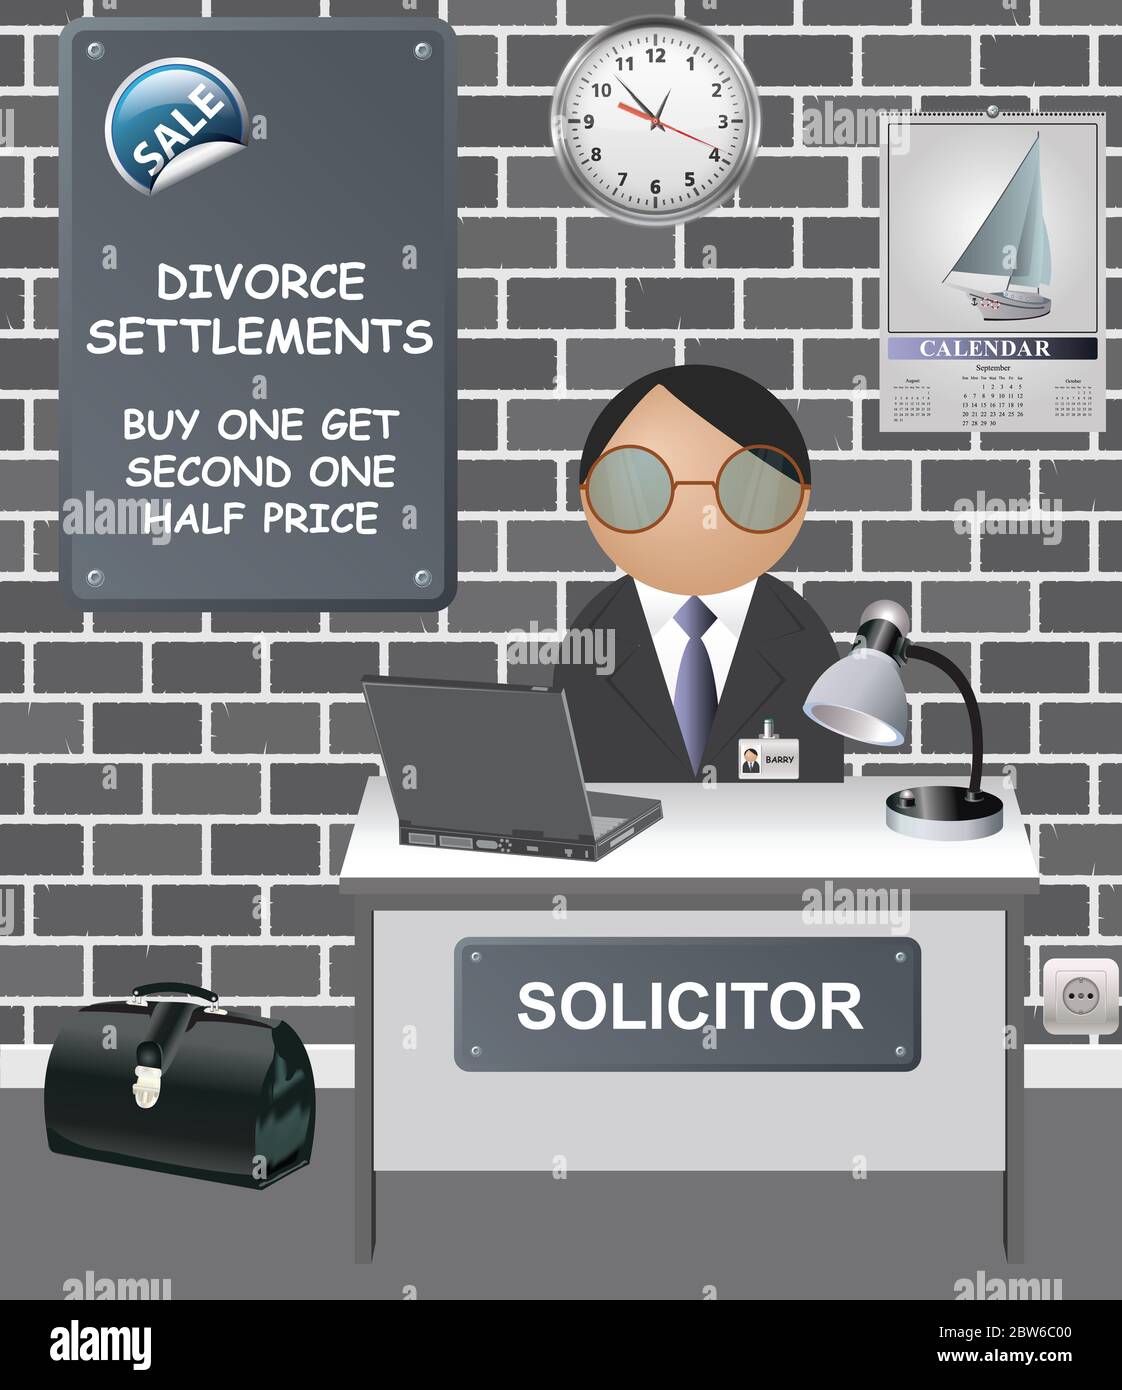 Oficina de abogados cómicos con oferta de venta en los acuerdos de divorcio comprar uno y obtener el segundo precio de la mitad Foto de stock